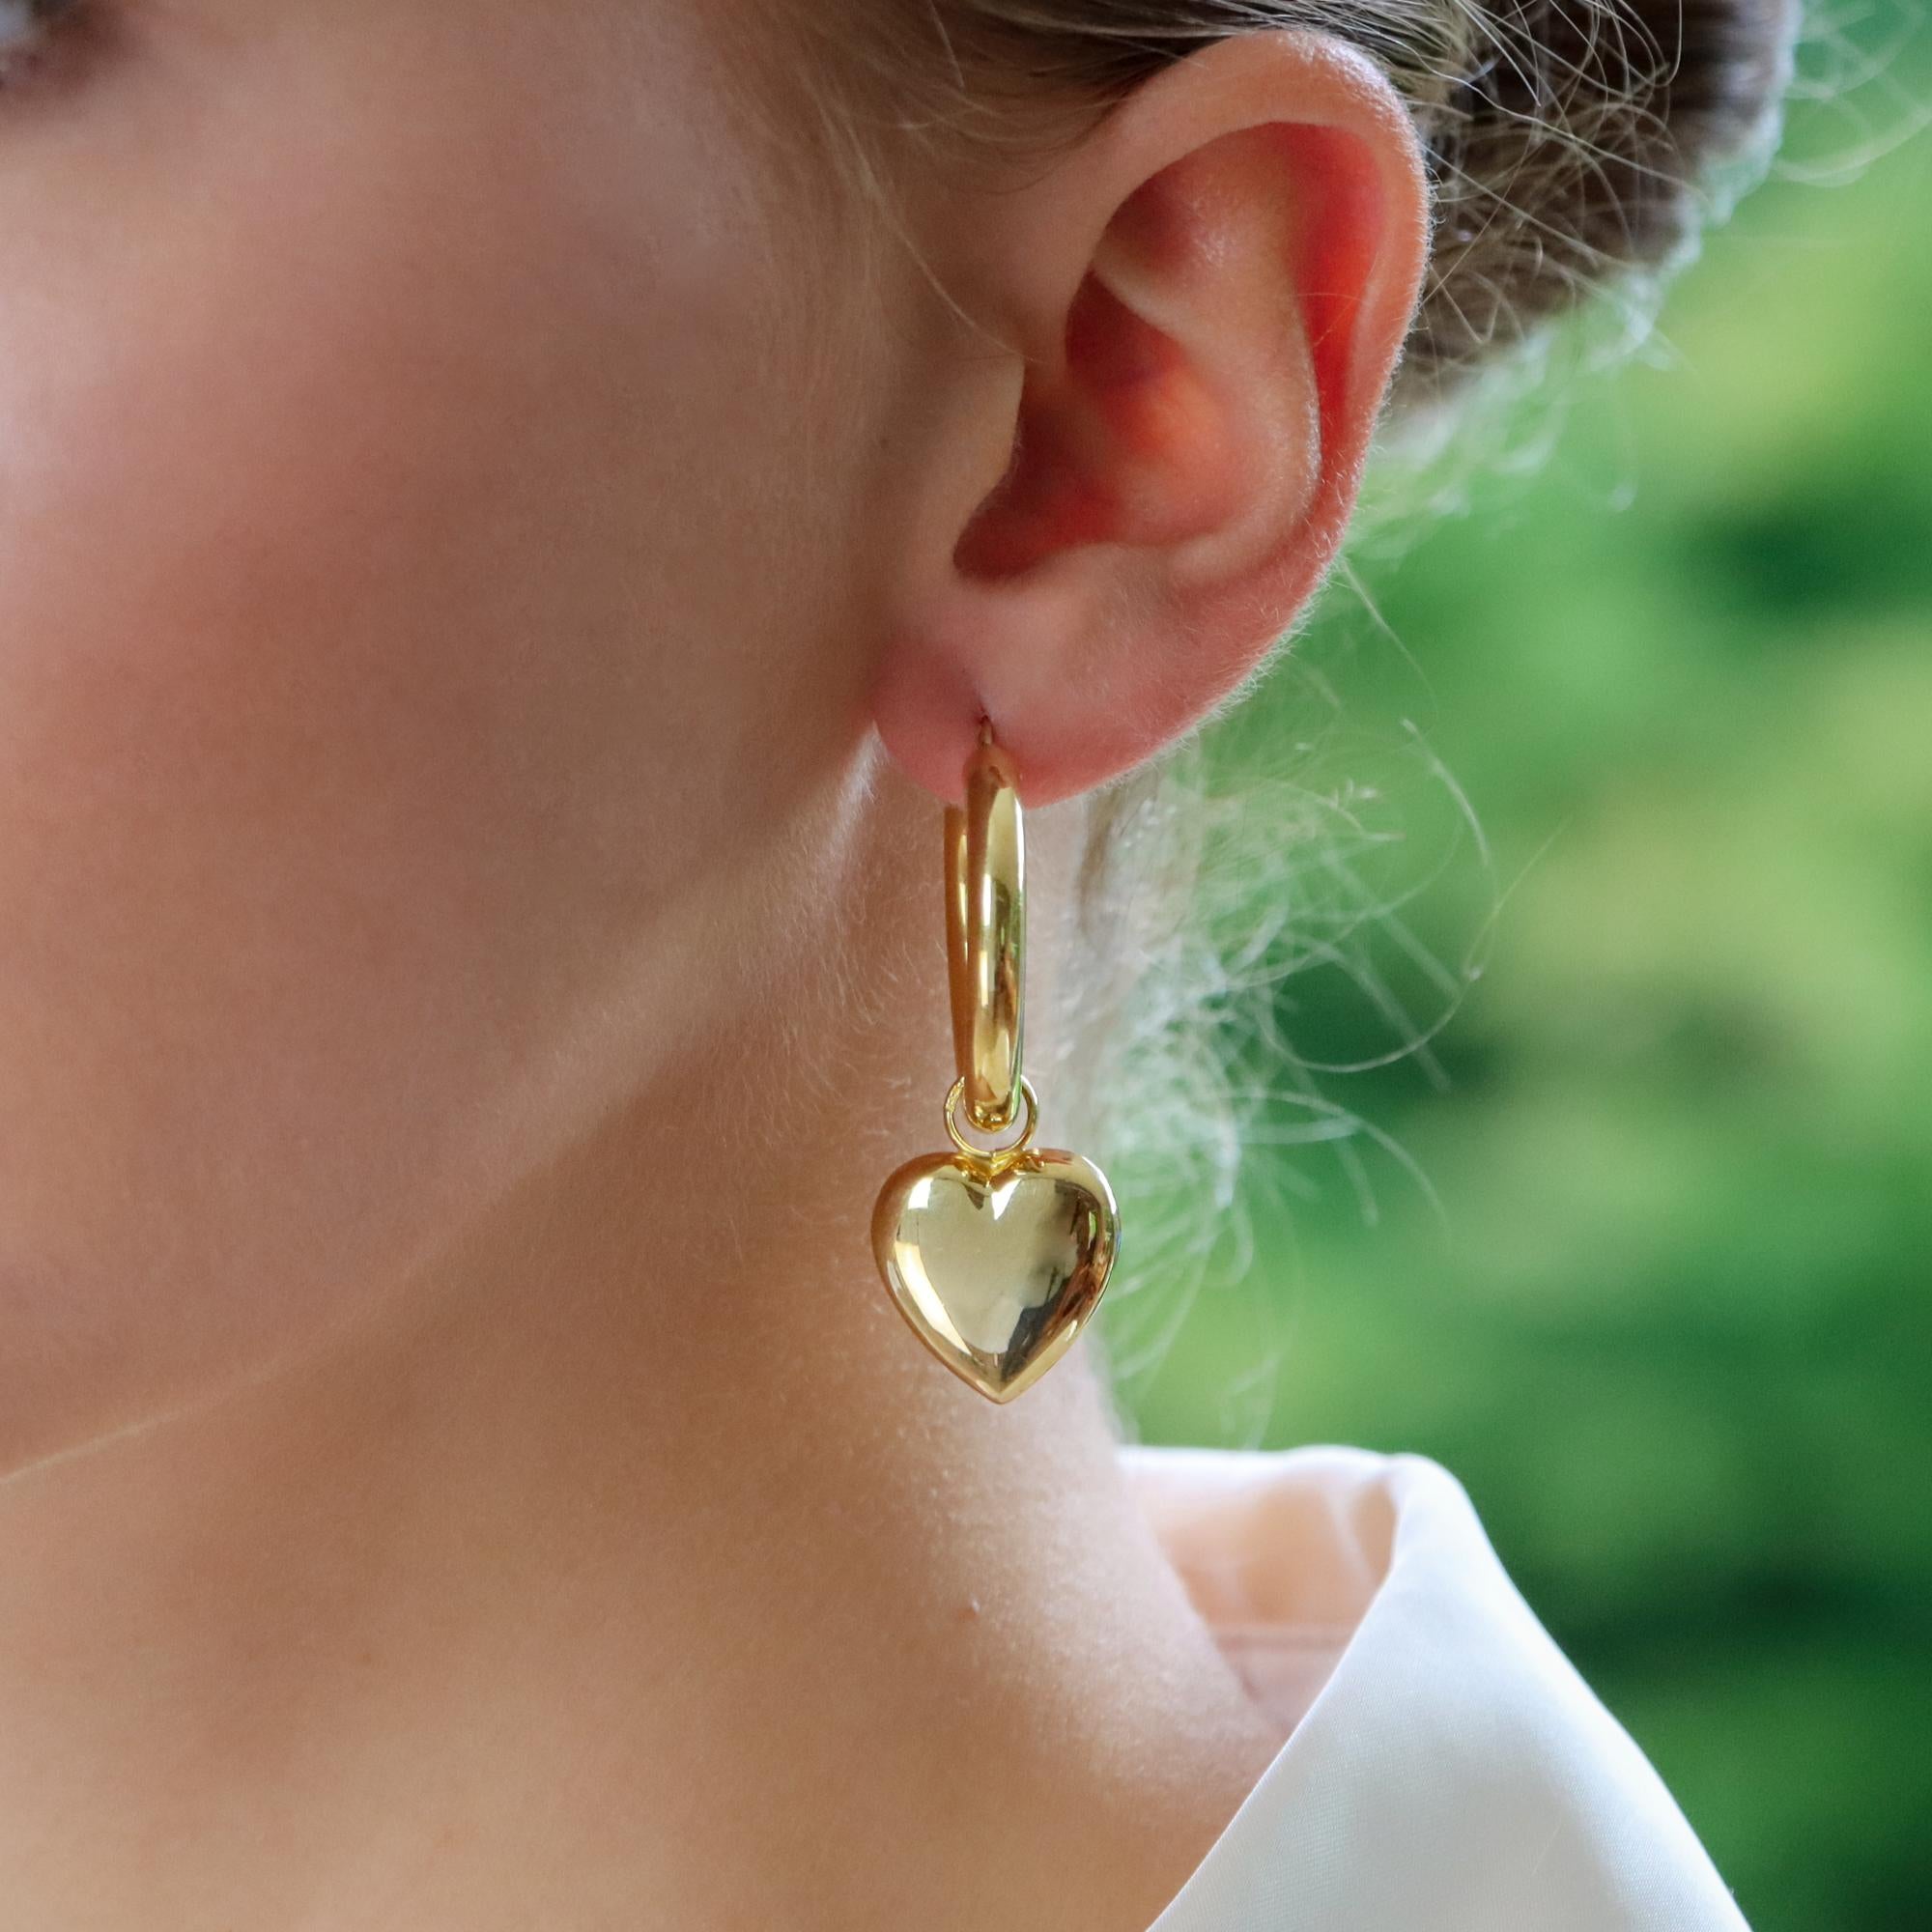 Ein stilvolles, alltagstaugliches Paar Retro-Cabrioherz-Ohrringe aus 9 Karat Gelbgold.

Diese fabelhaften Ohrringe bestehen zunächst aus einem großen runden 28-Millimeter-Reifen. Am Reif hängt ein abnehmbares Herz, das frei hängt und das